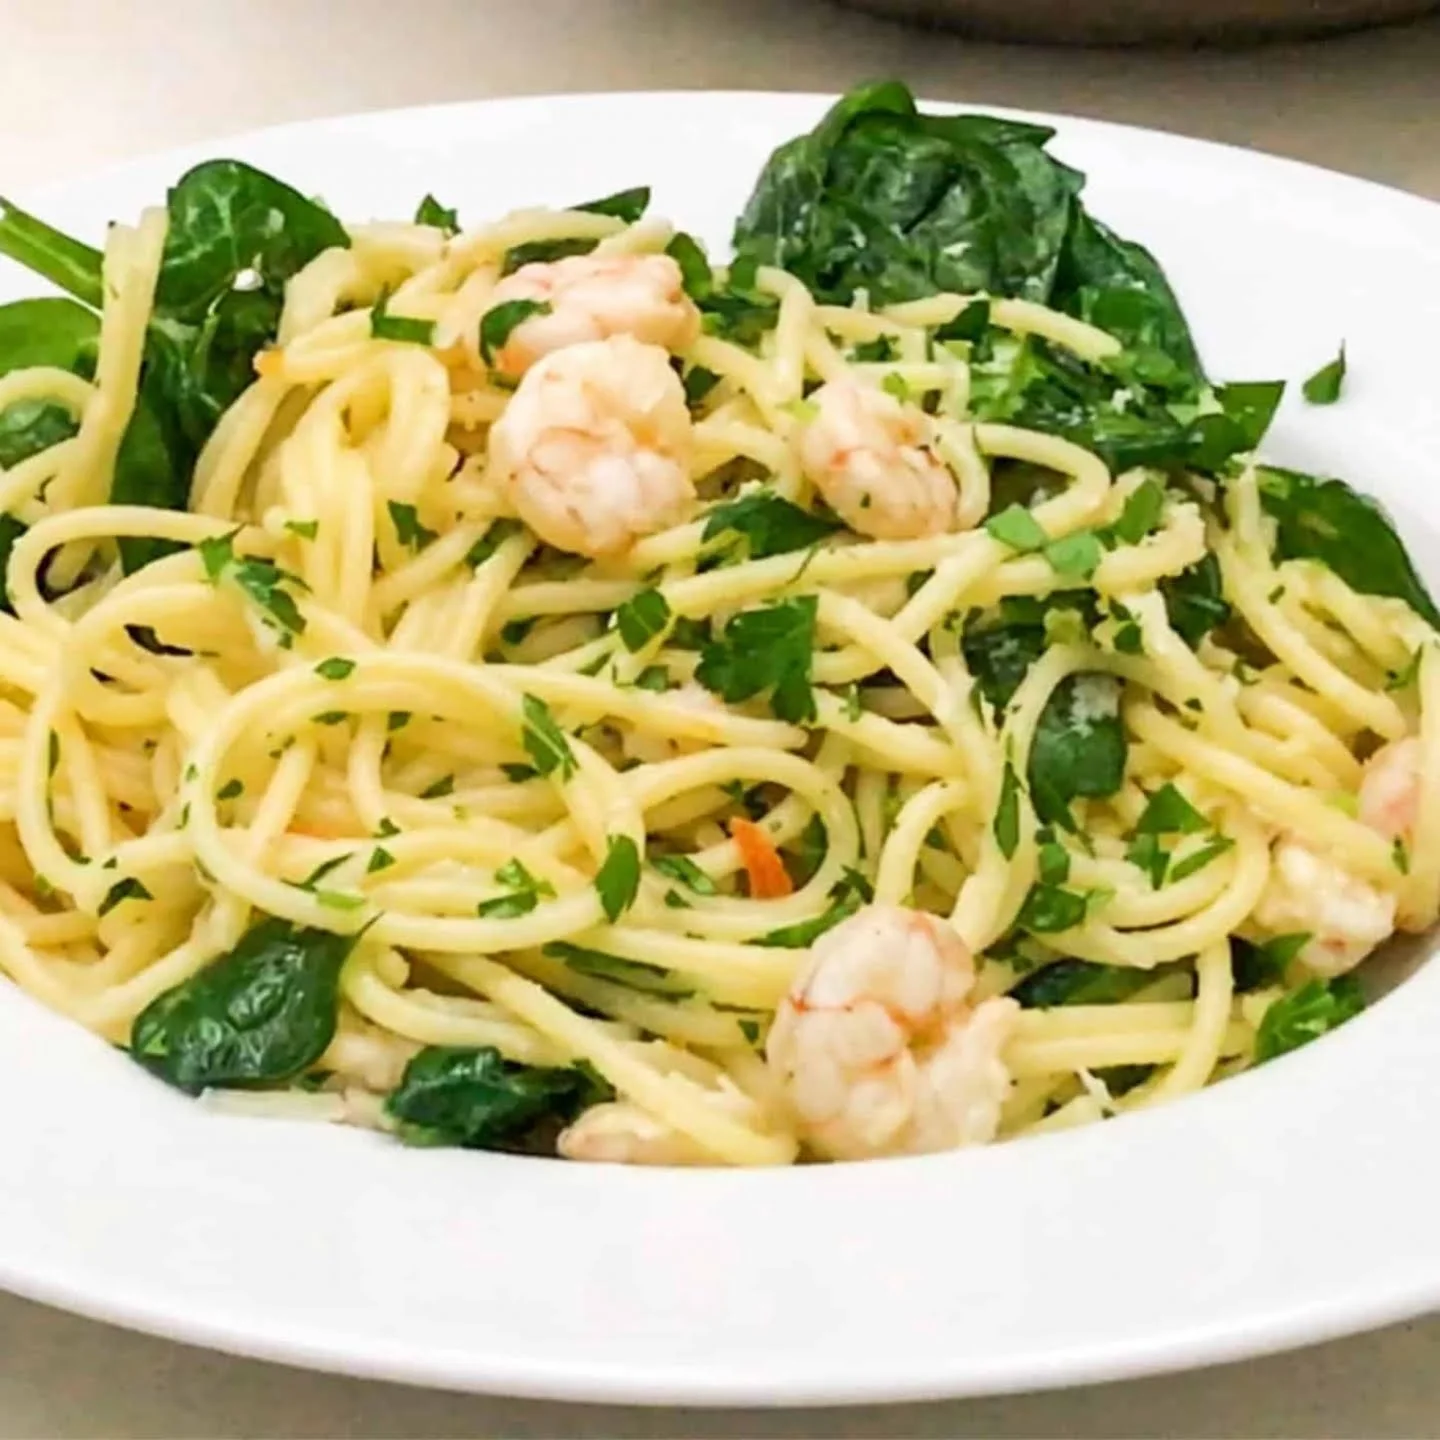 Lemon Garlic Shrimp Pasta Recipe featured